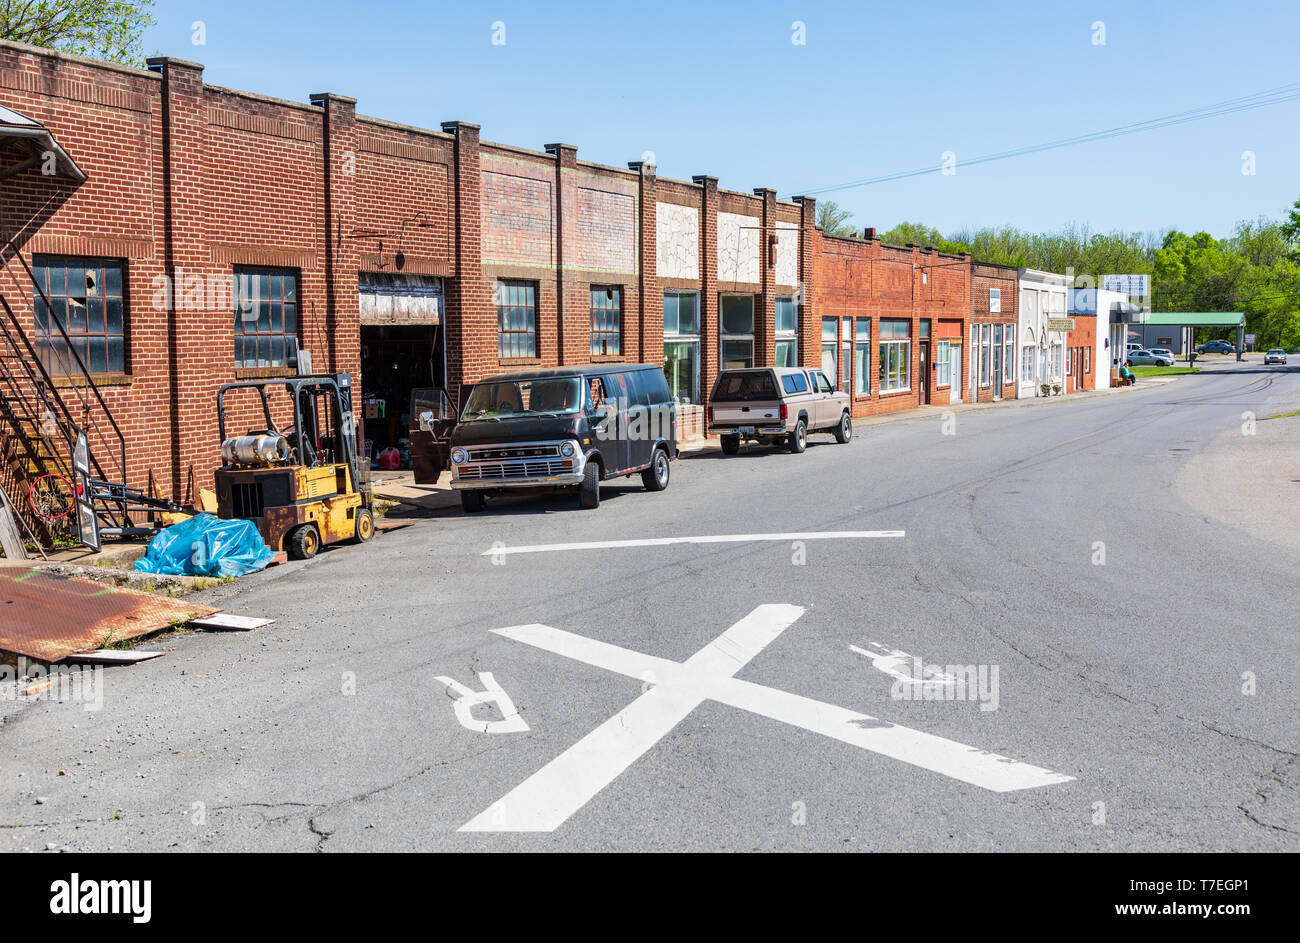 La caliza, TN, USA-4/27/19: una fila vacía la mayoría de edificios comerciales en una pequeña comunidad rural. Foto de stock